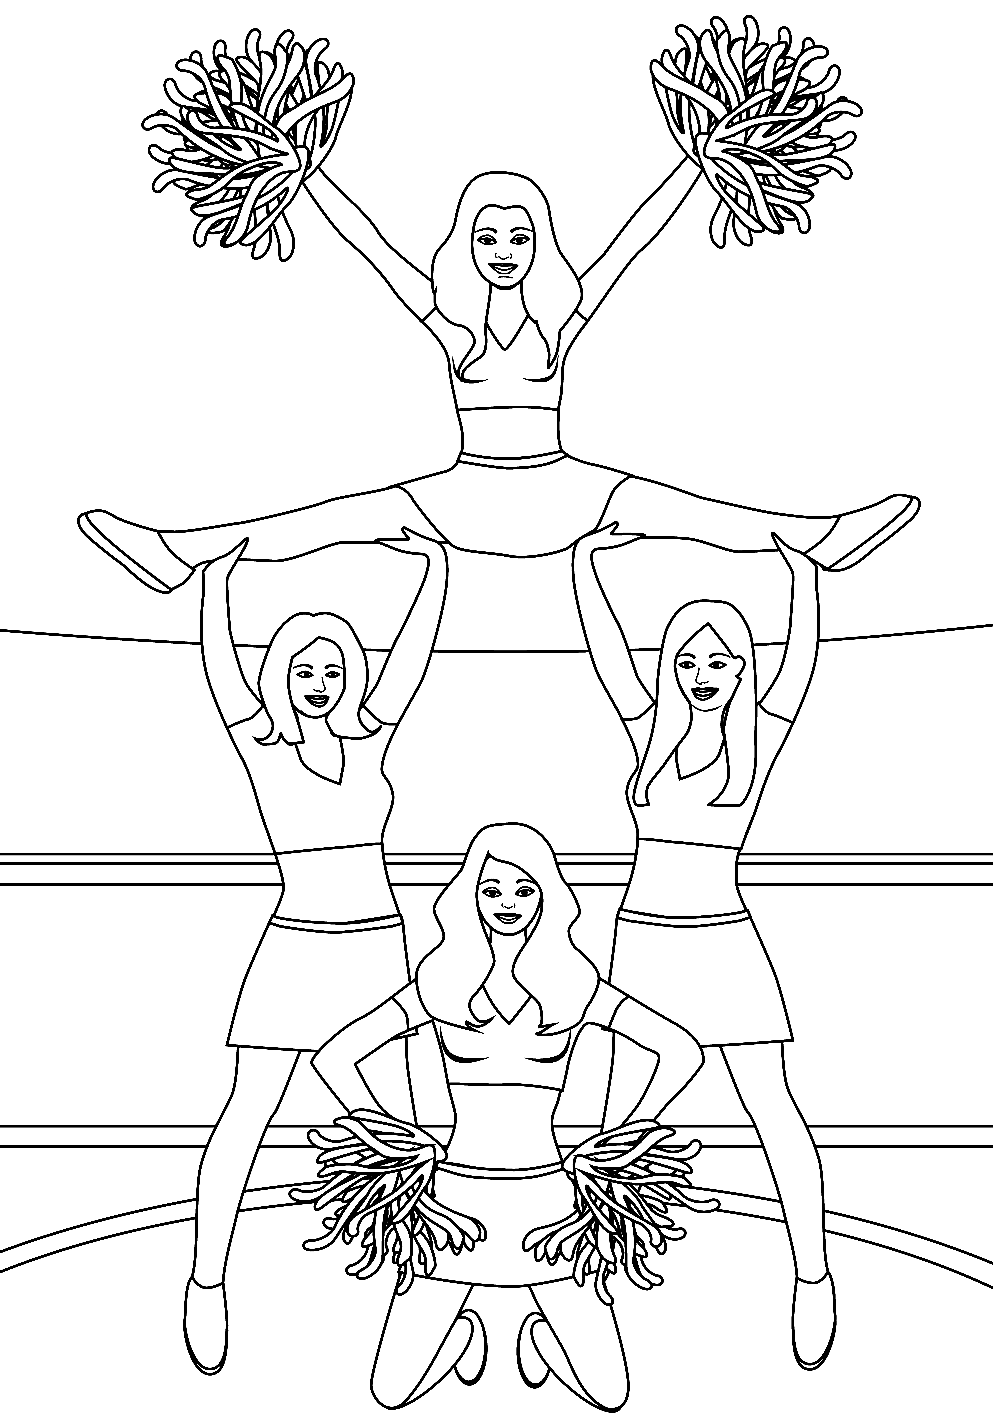 Team Cheerleader Printable Coloring Pages